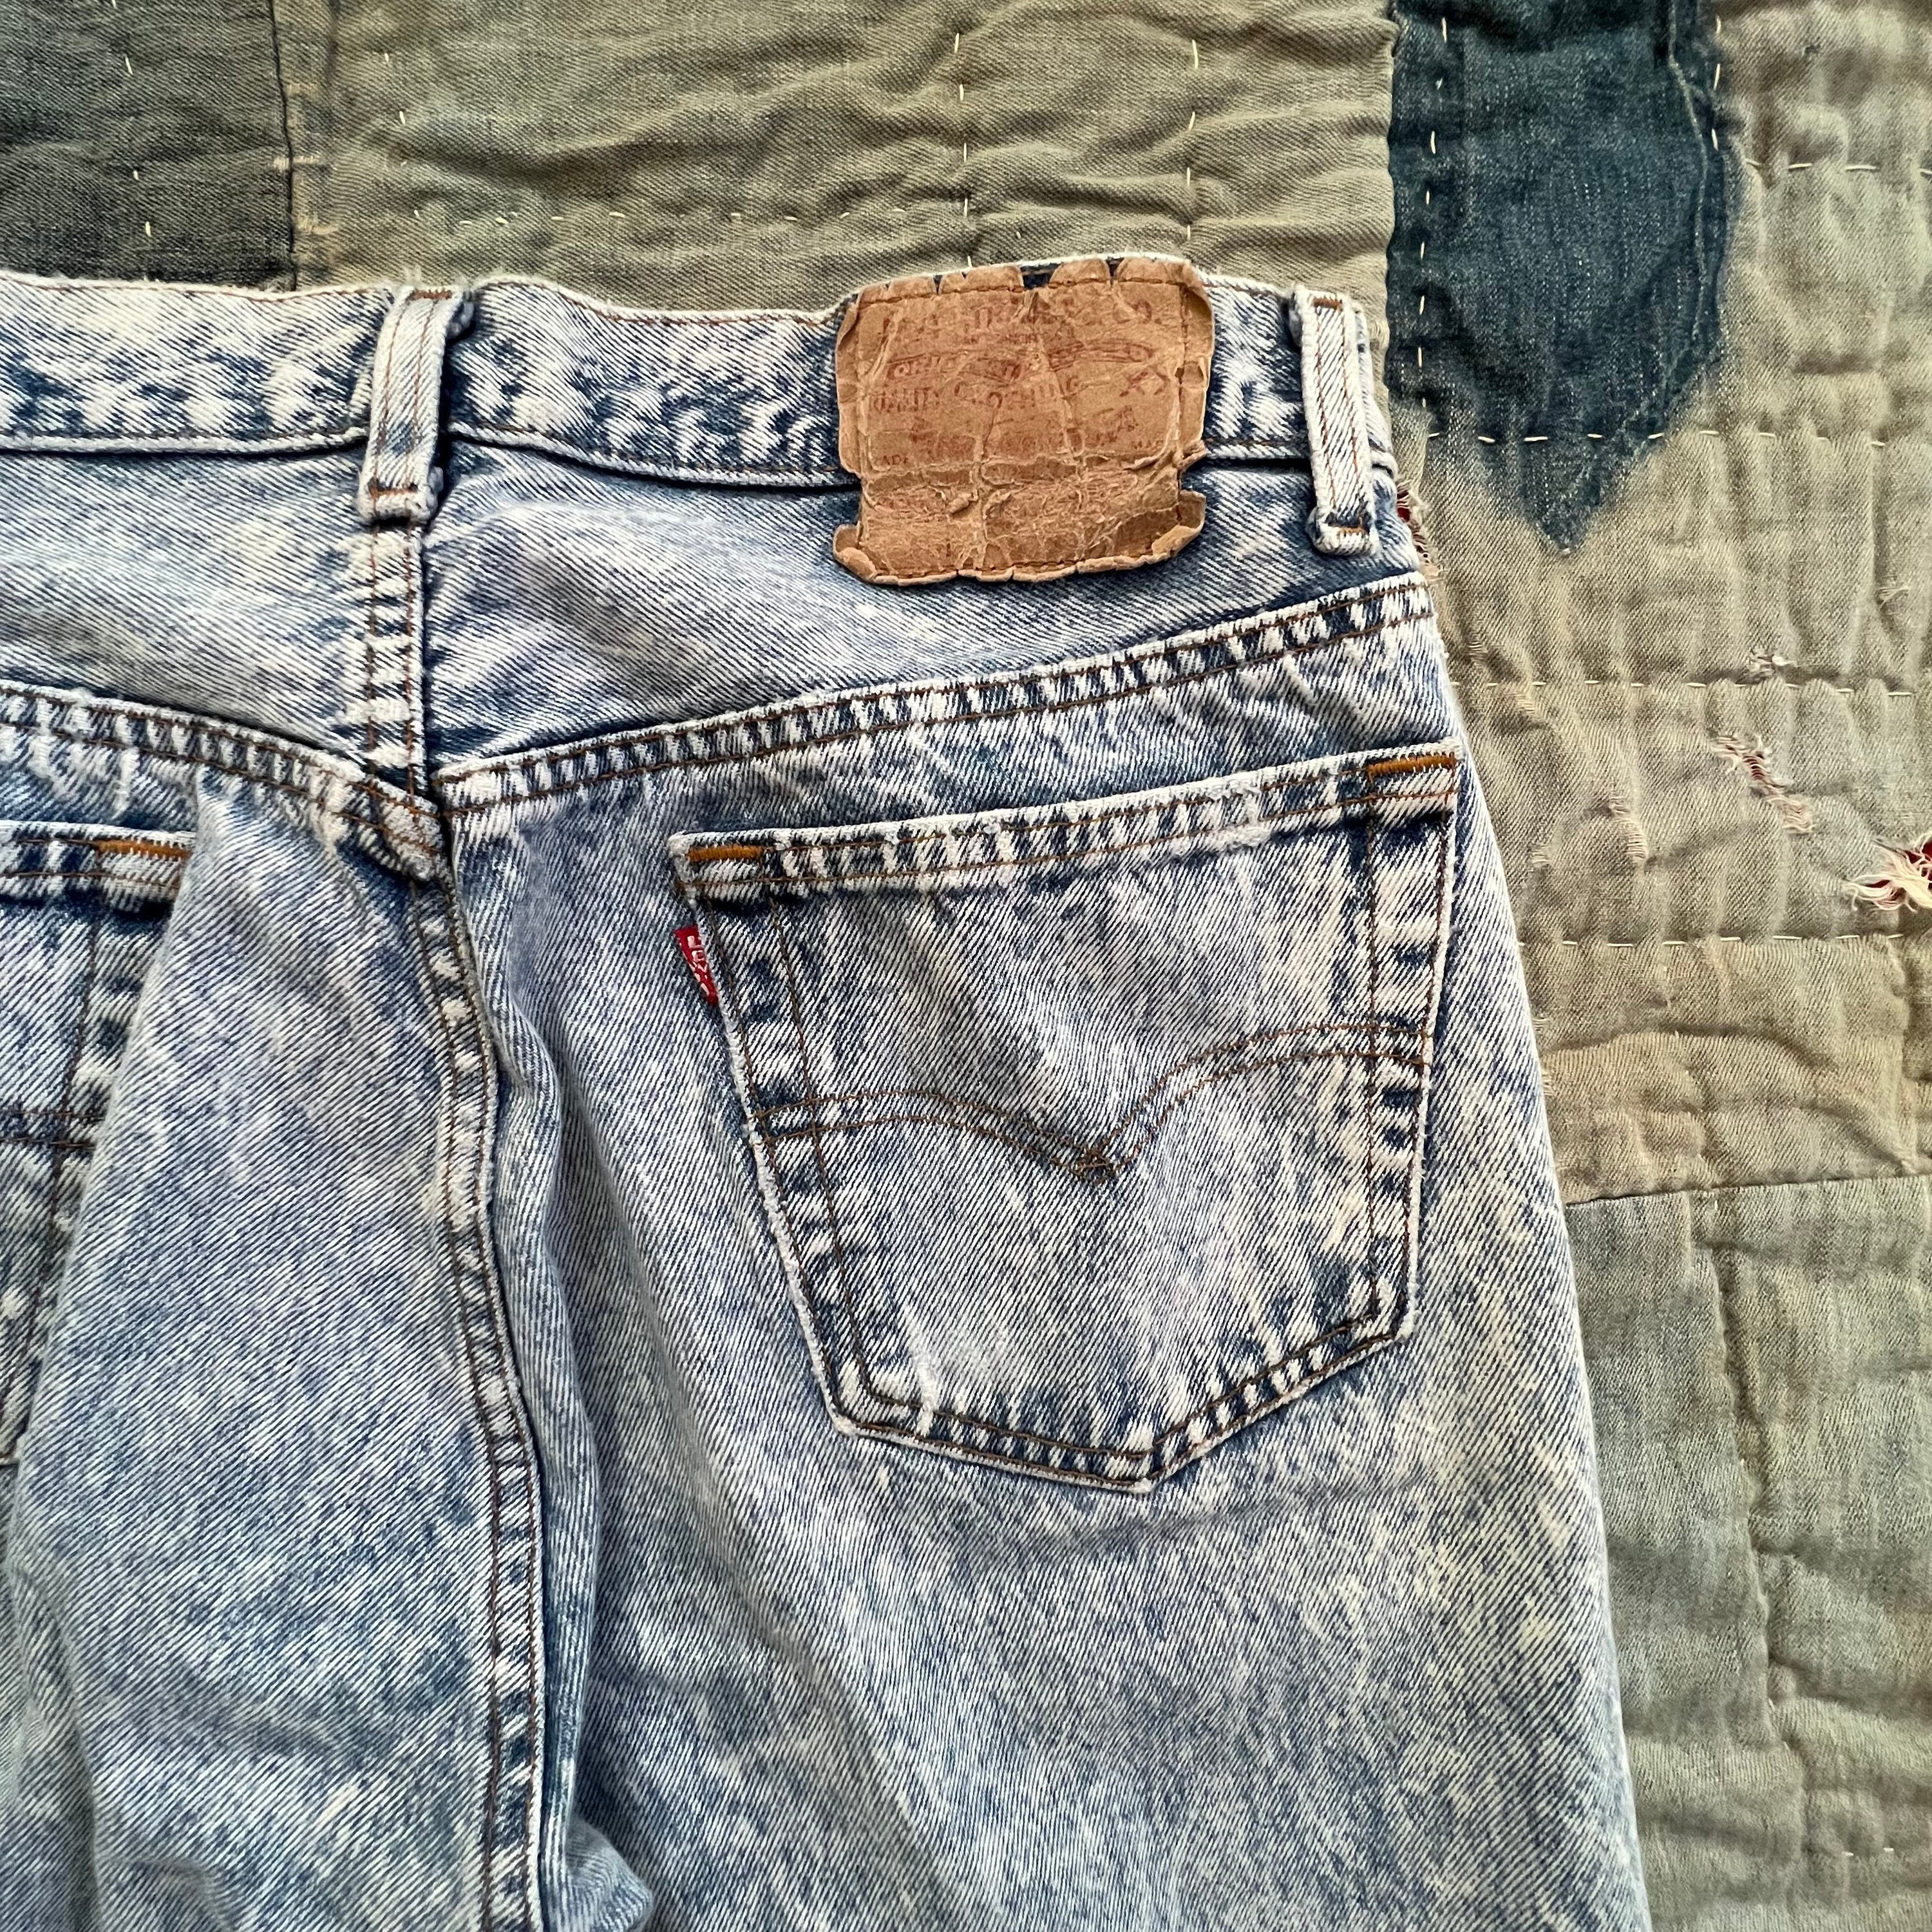 krystal depositum Uensartet Vintage Acid Wash Levis Jeans - Etsy